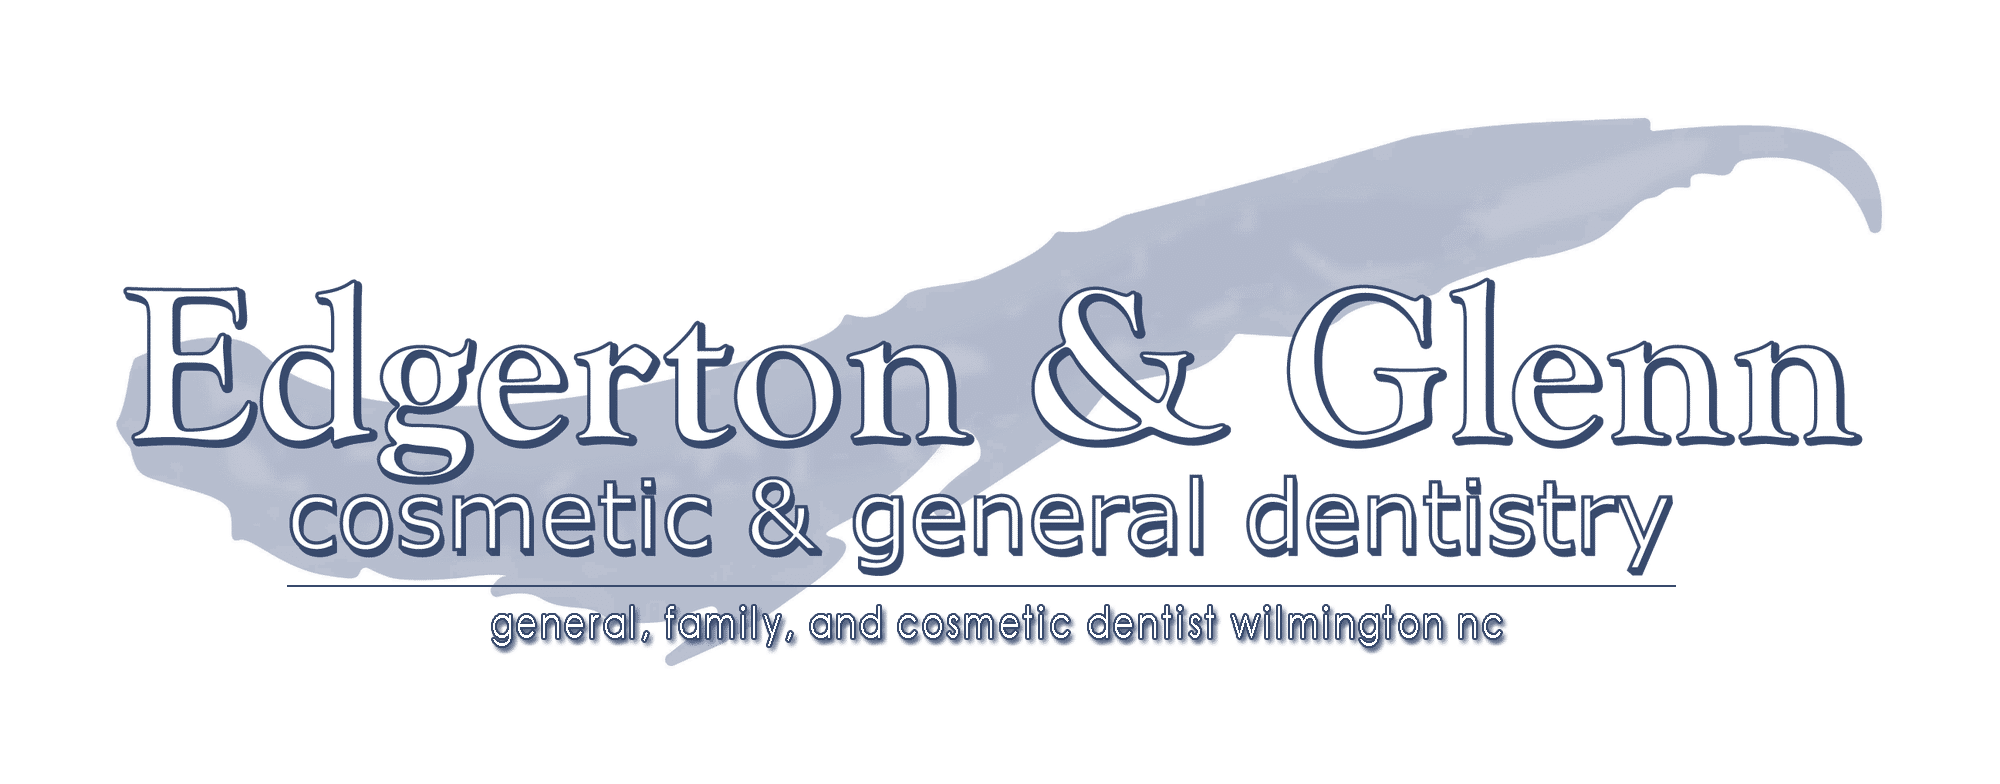 edgerton-glenn-logo-tagline